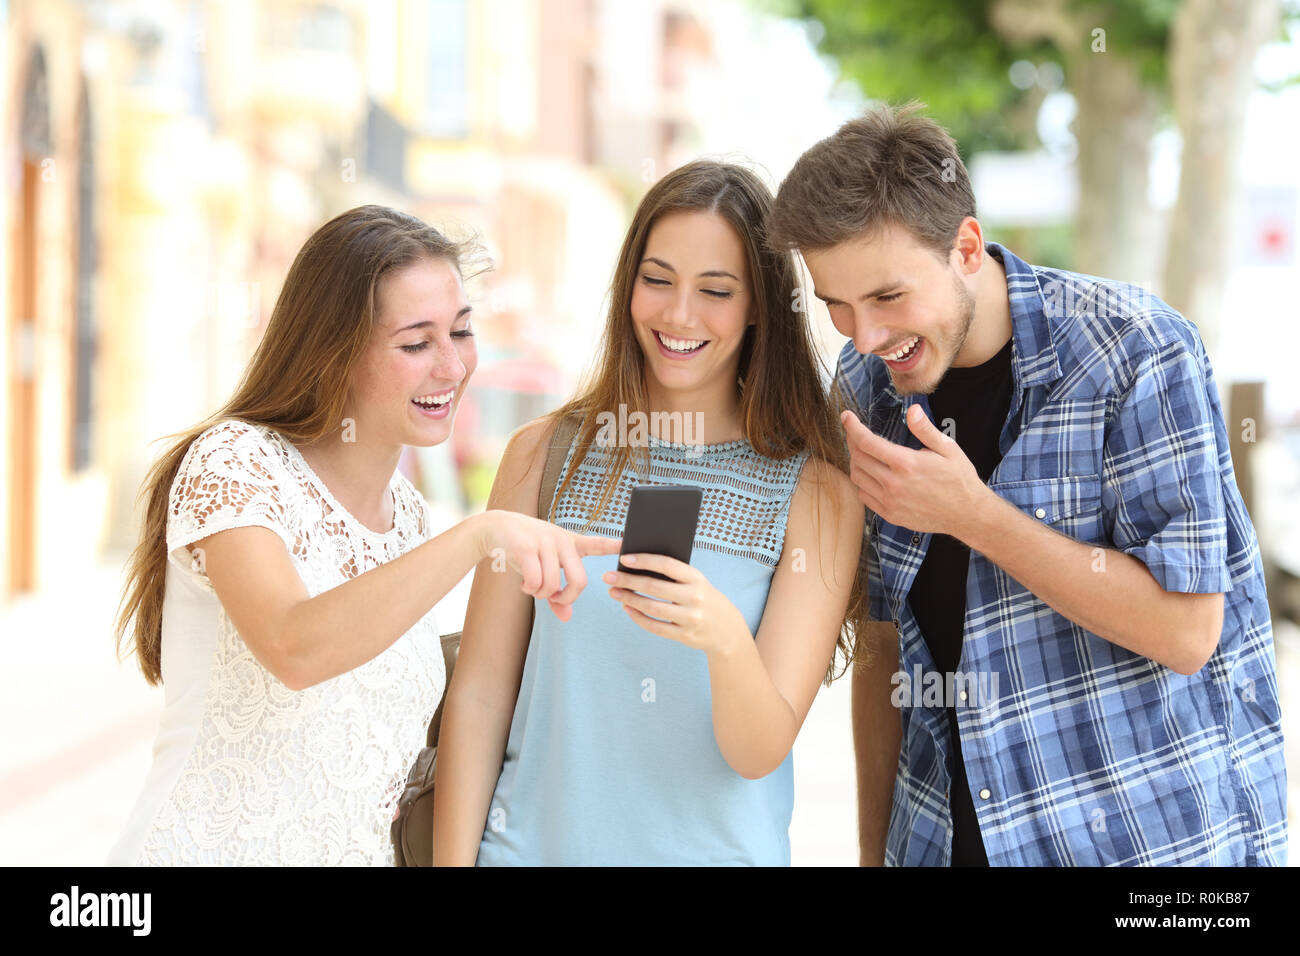 Trois amis heureux de regarder le contenu du smartphone dans la rue Banque D'Images